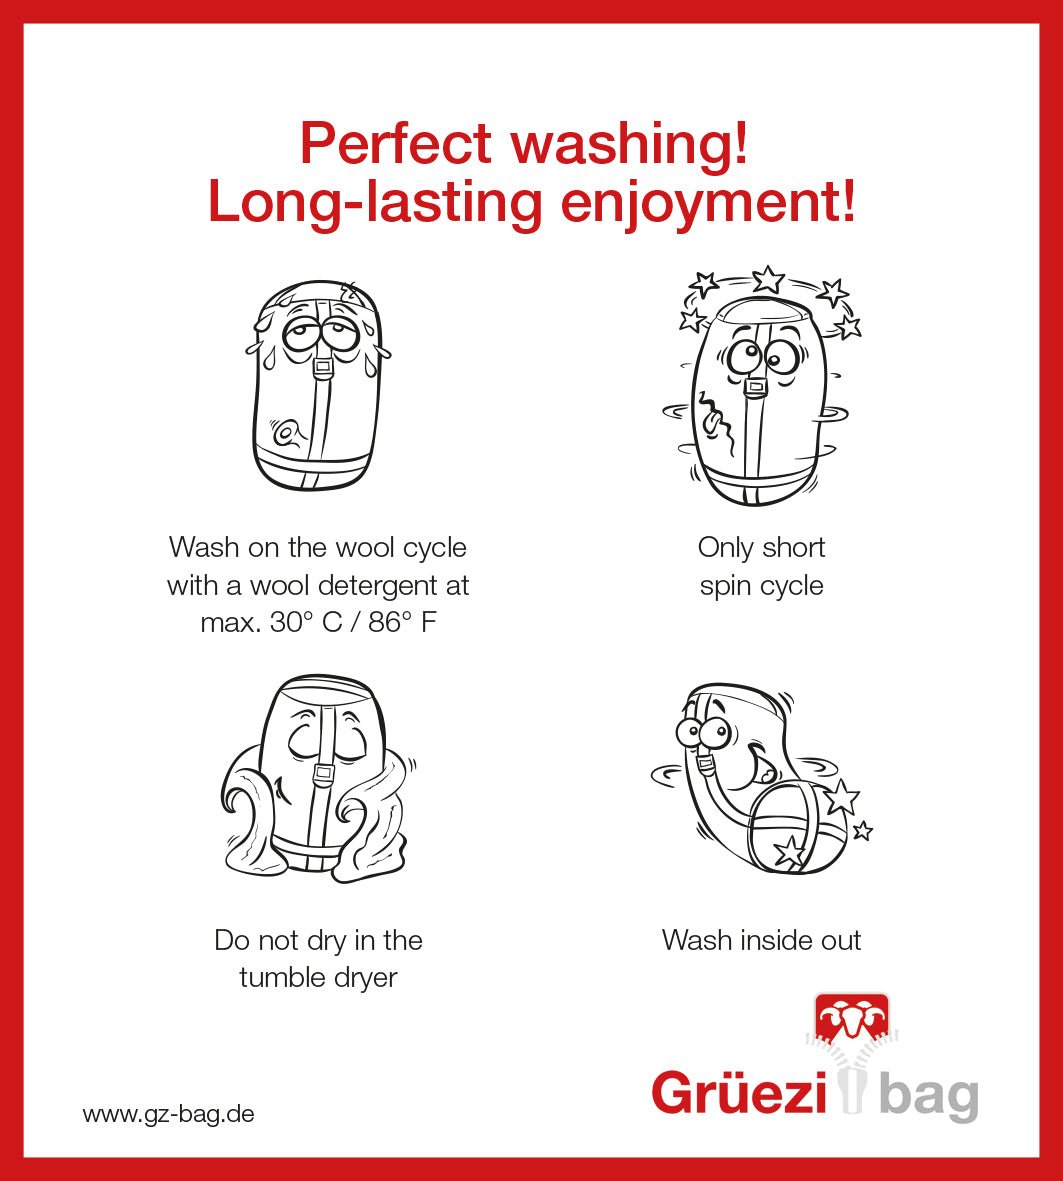 Grüezi bag Wollschlafsack Biopod Wolle Plus - Washing instructions english